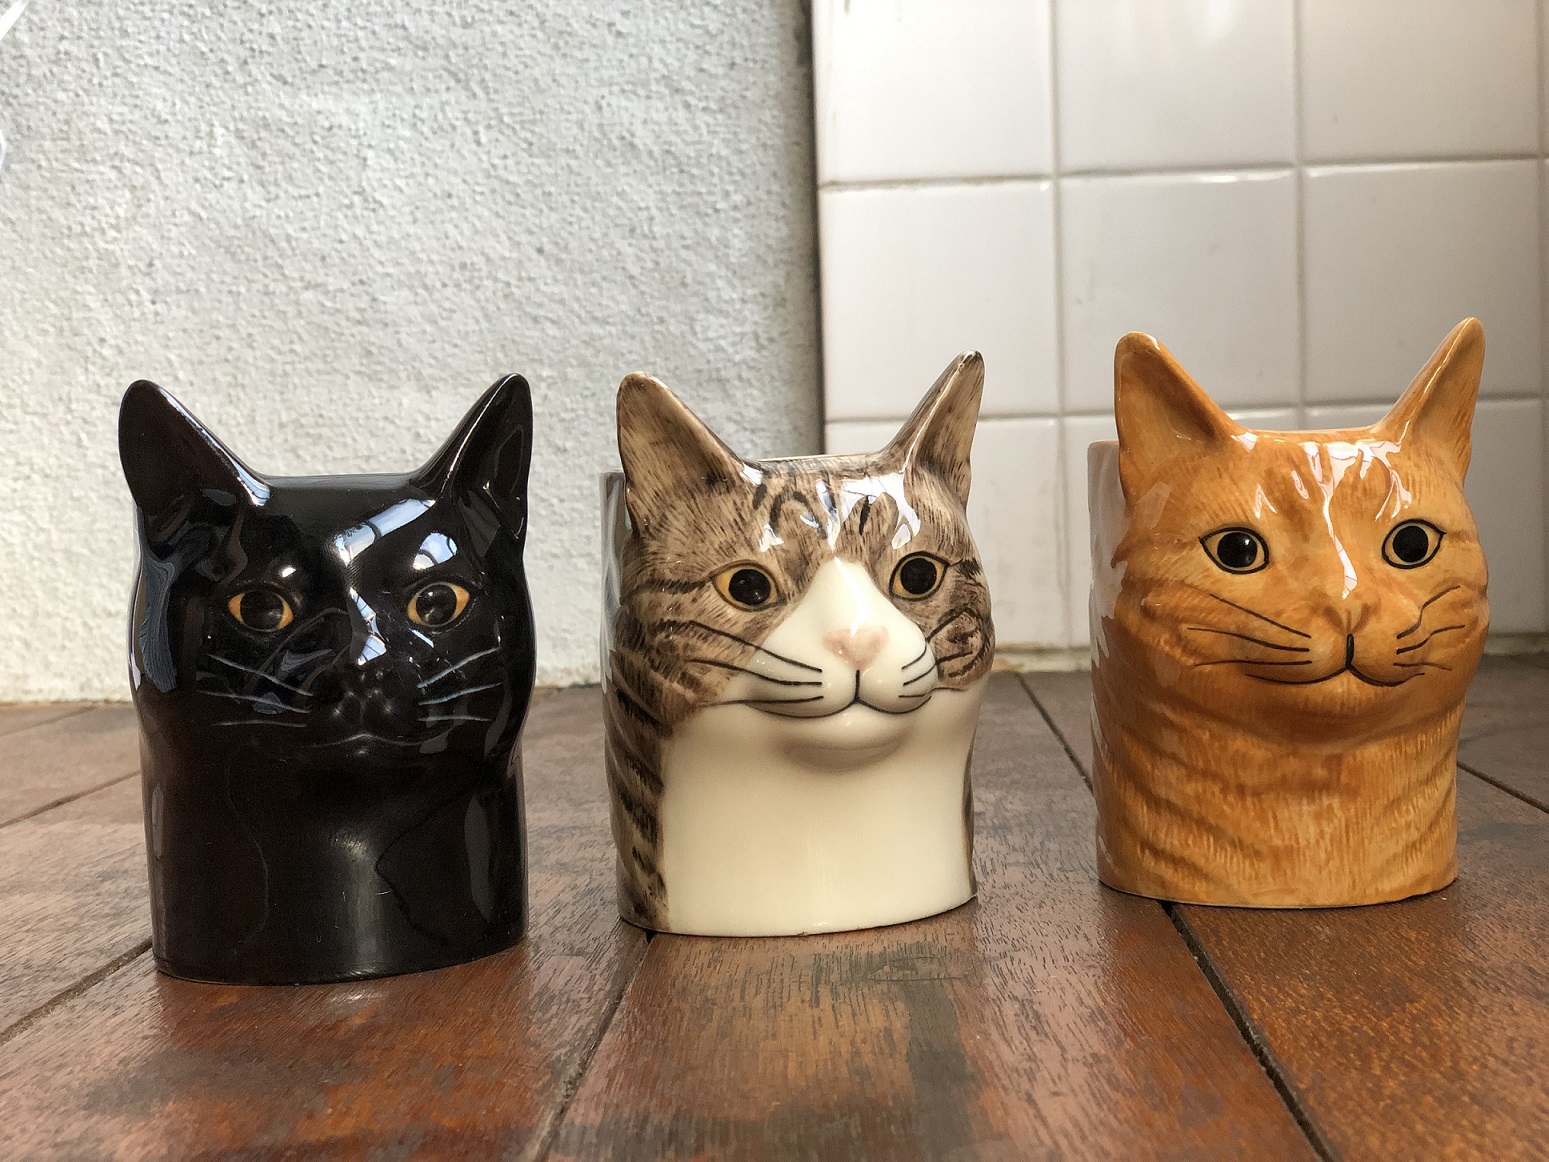 イギリス Quail Ceramics社の猫花瓶などが入荷しました | 猫本専門書店 書肆 吾輩堂